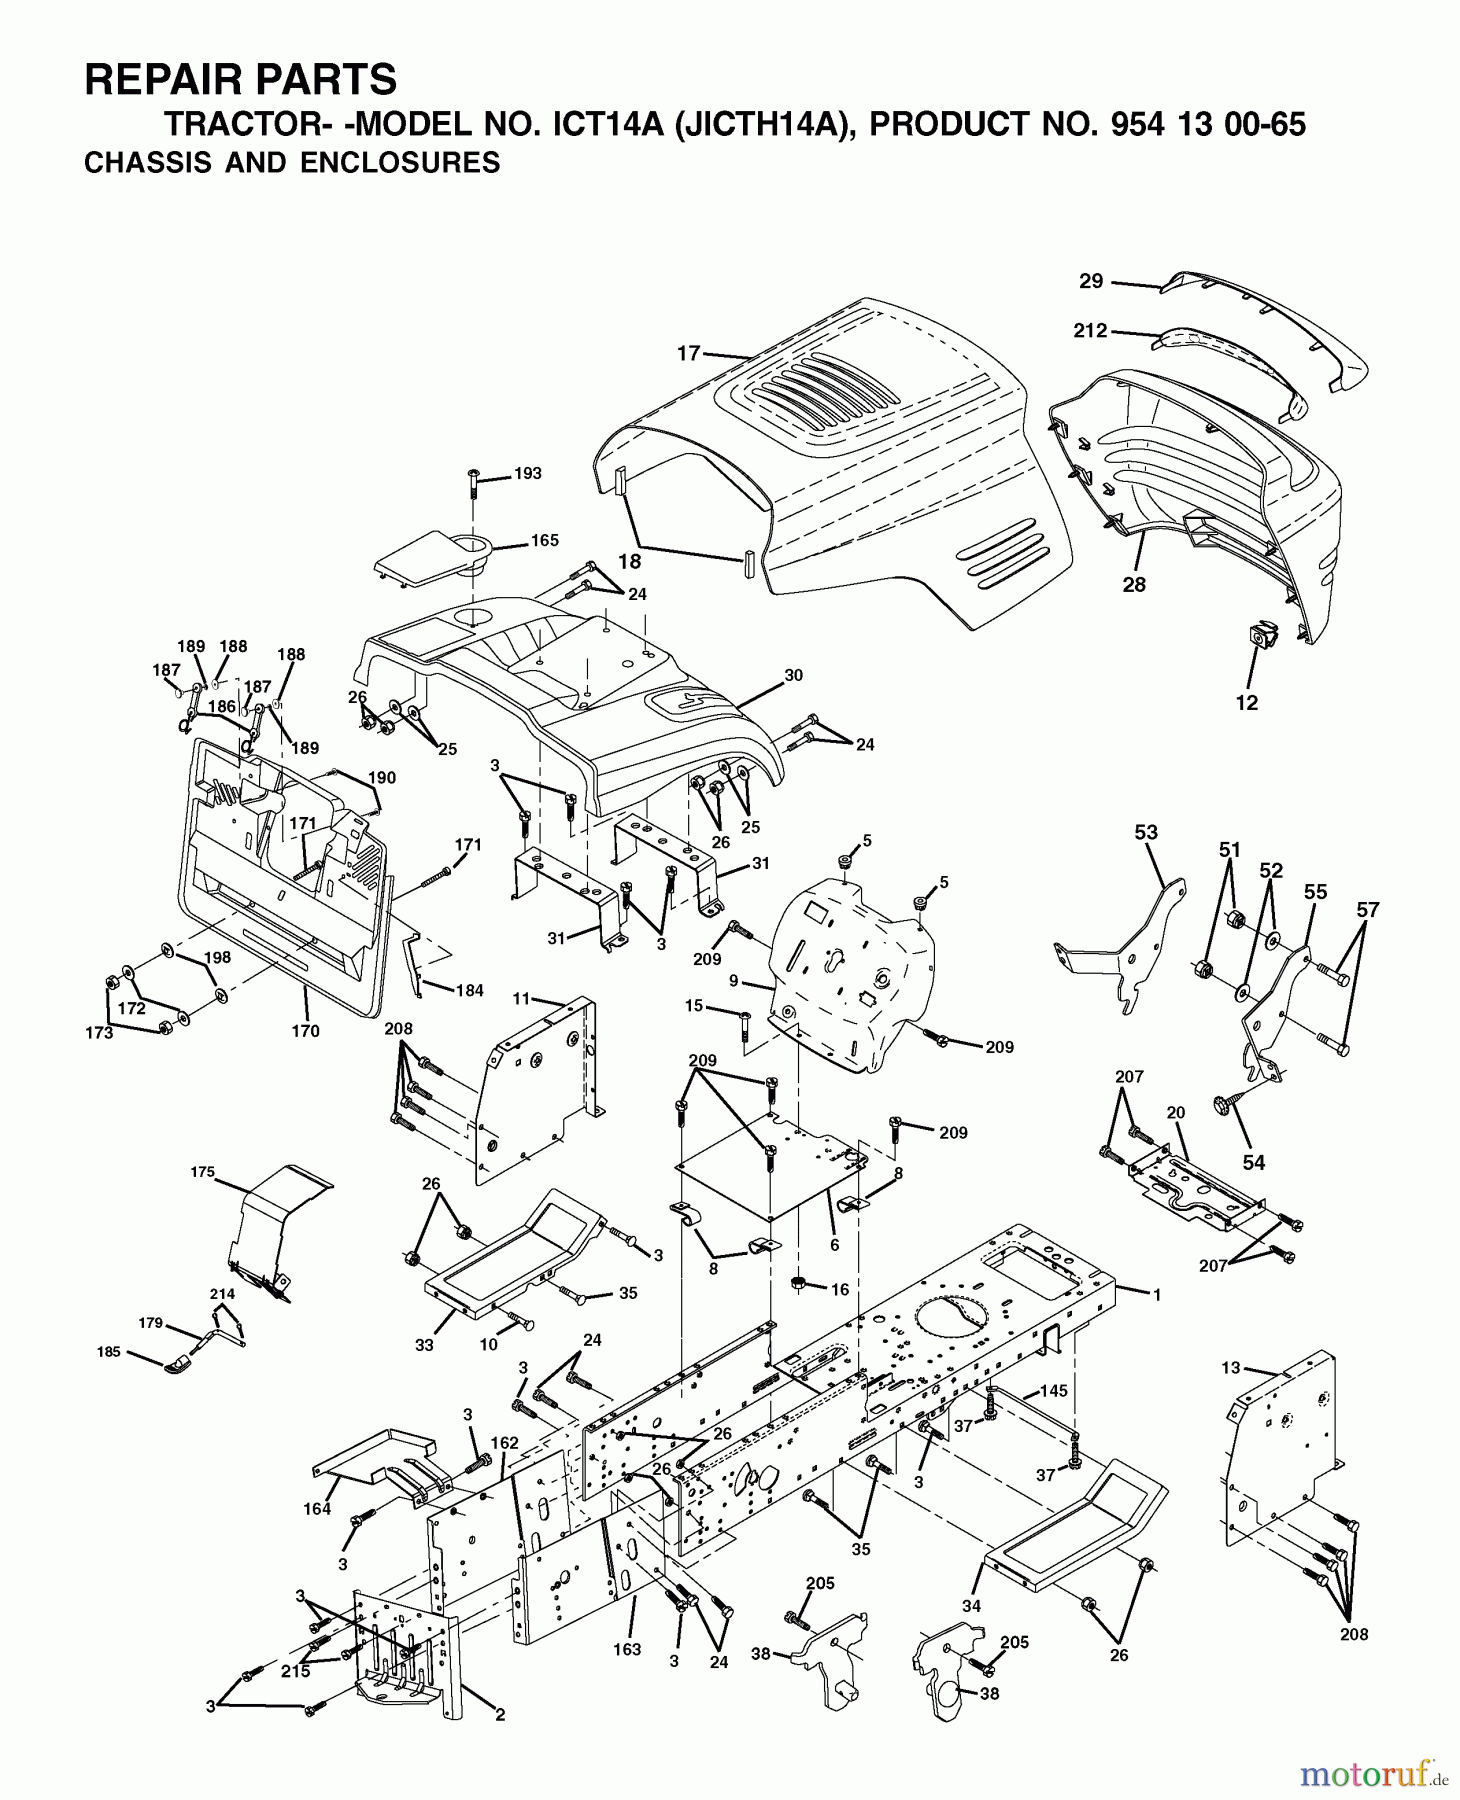  Jonsered Rasen  und Garten Traktoren ICT14A (JICTH14A, 954130065) - Jonsered Lawn & Garden Tractor (2002-02) CHASSIS ENCLOSURES